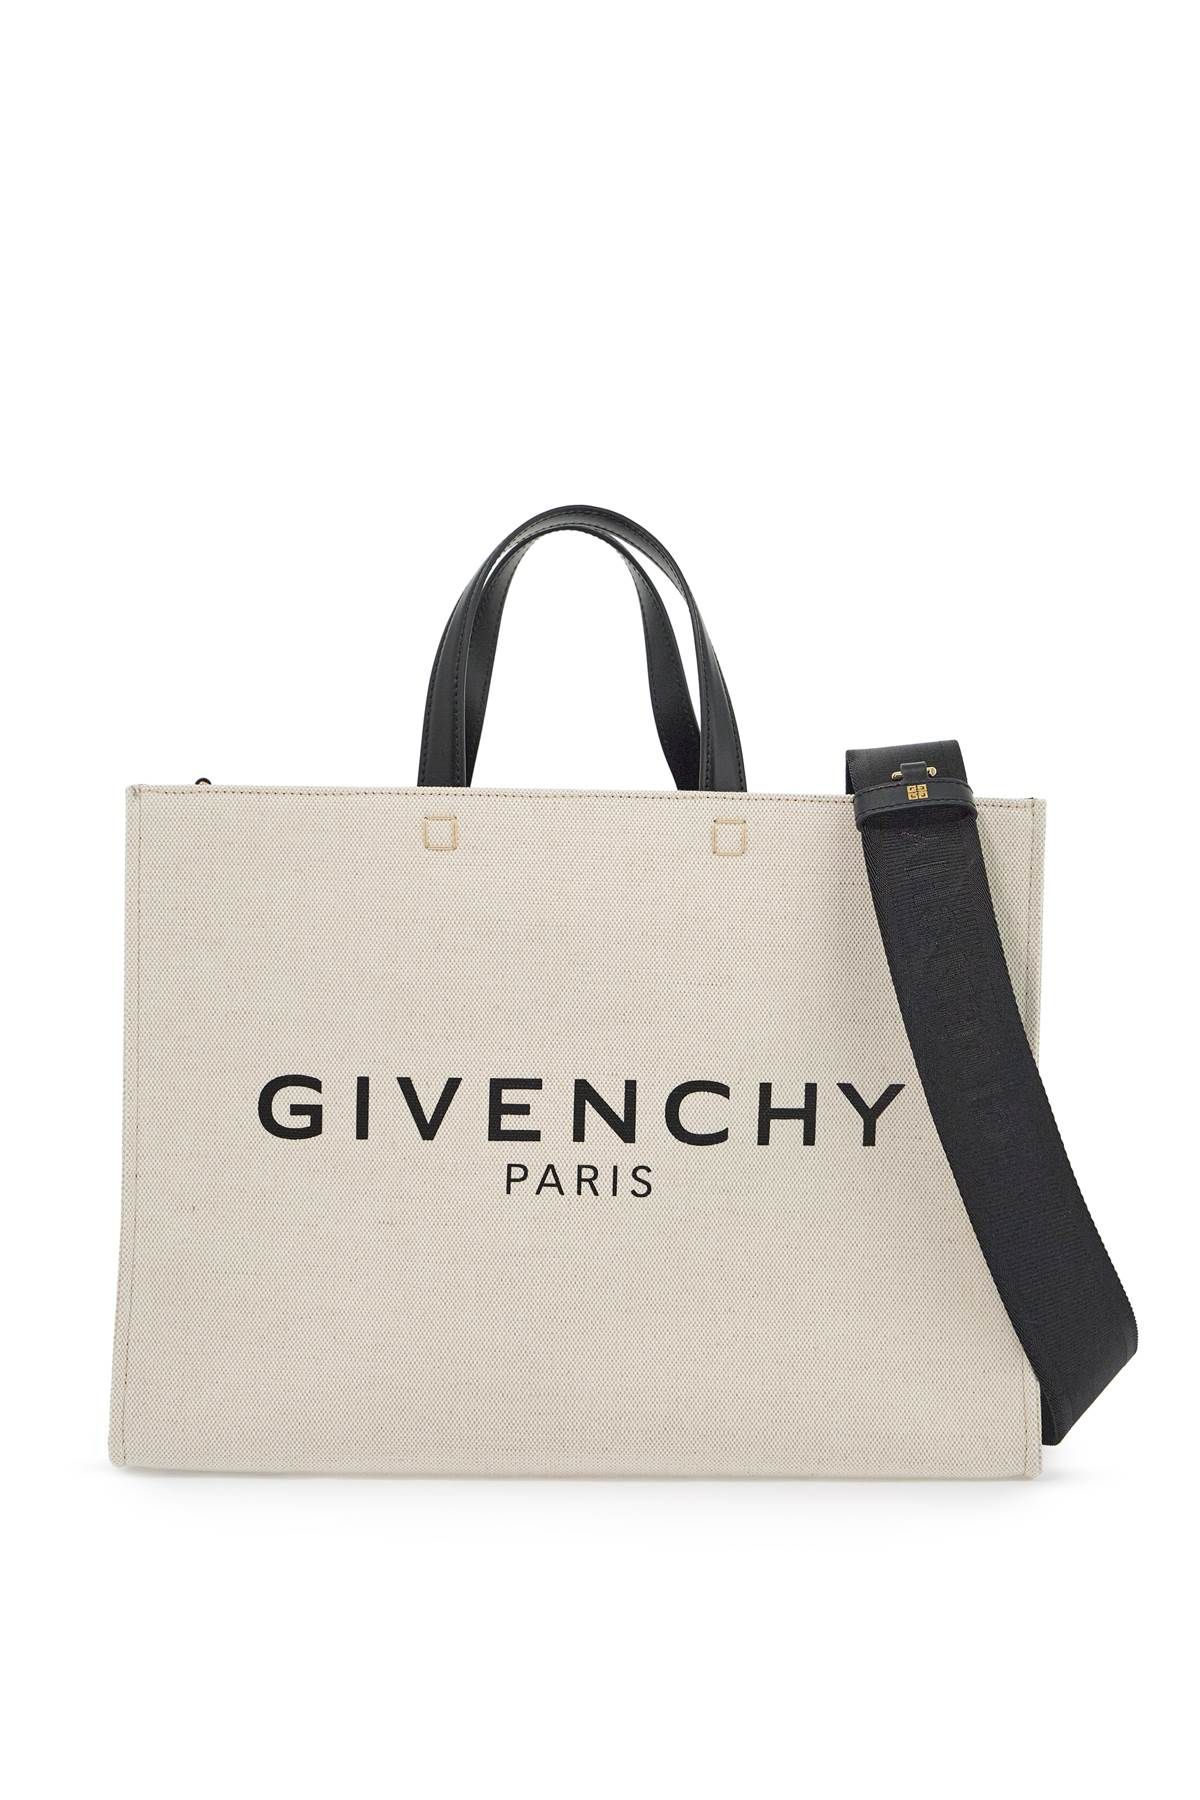 Givenchy GIVENCHY g canvas tote bag